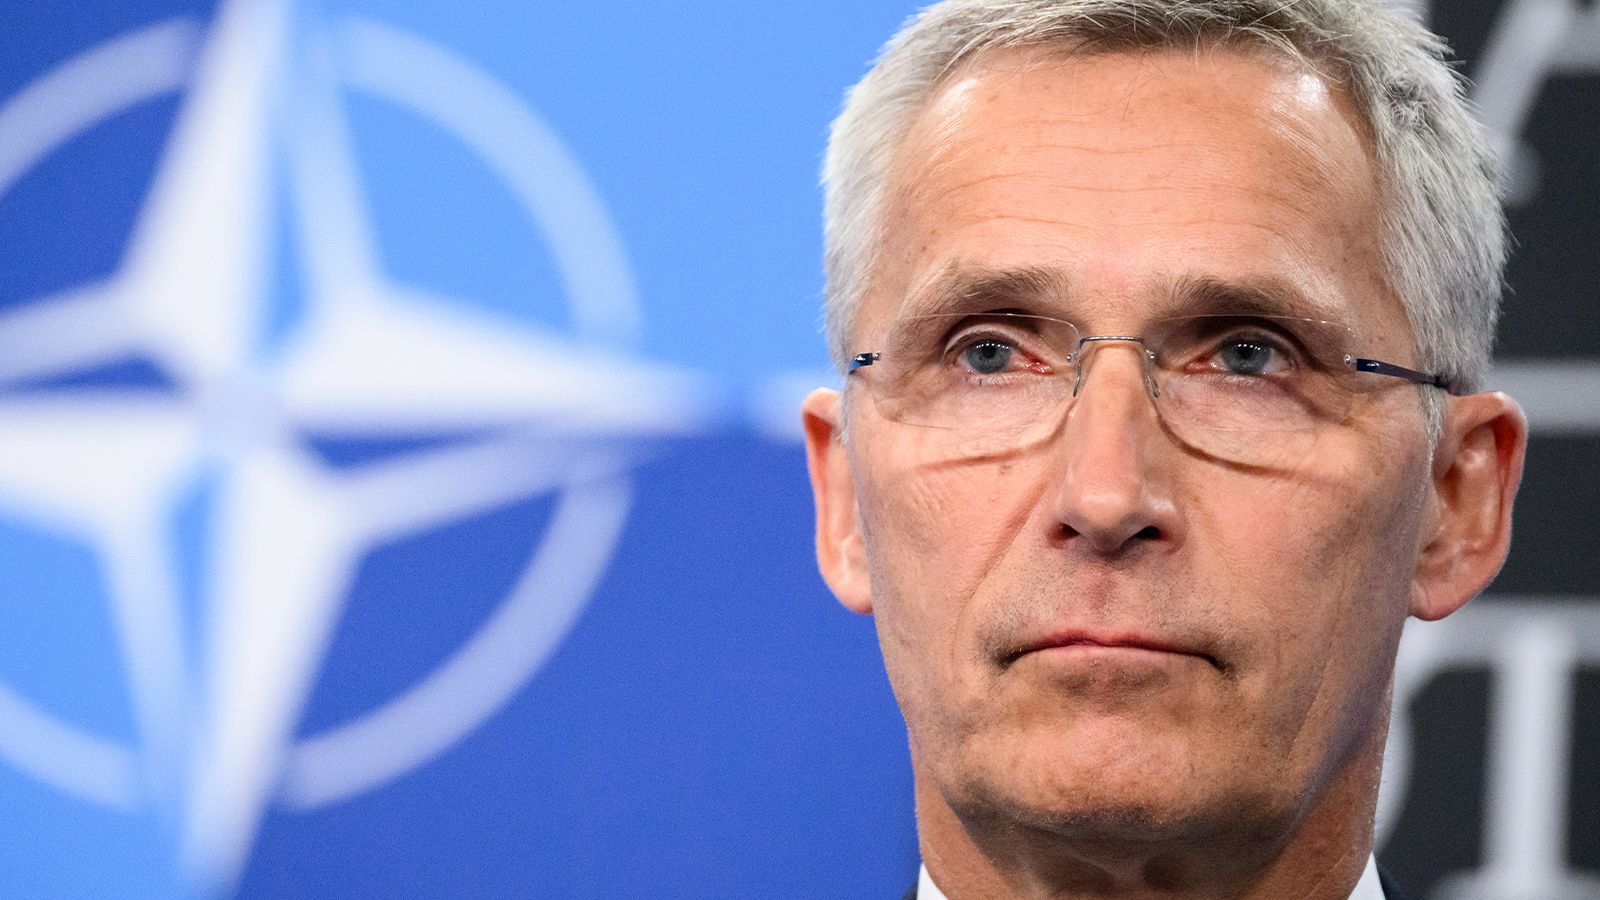 NATO: Ukrayna krizi bitse de Rusya’yla ilişkiler eskisi gibi olmayacak